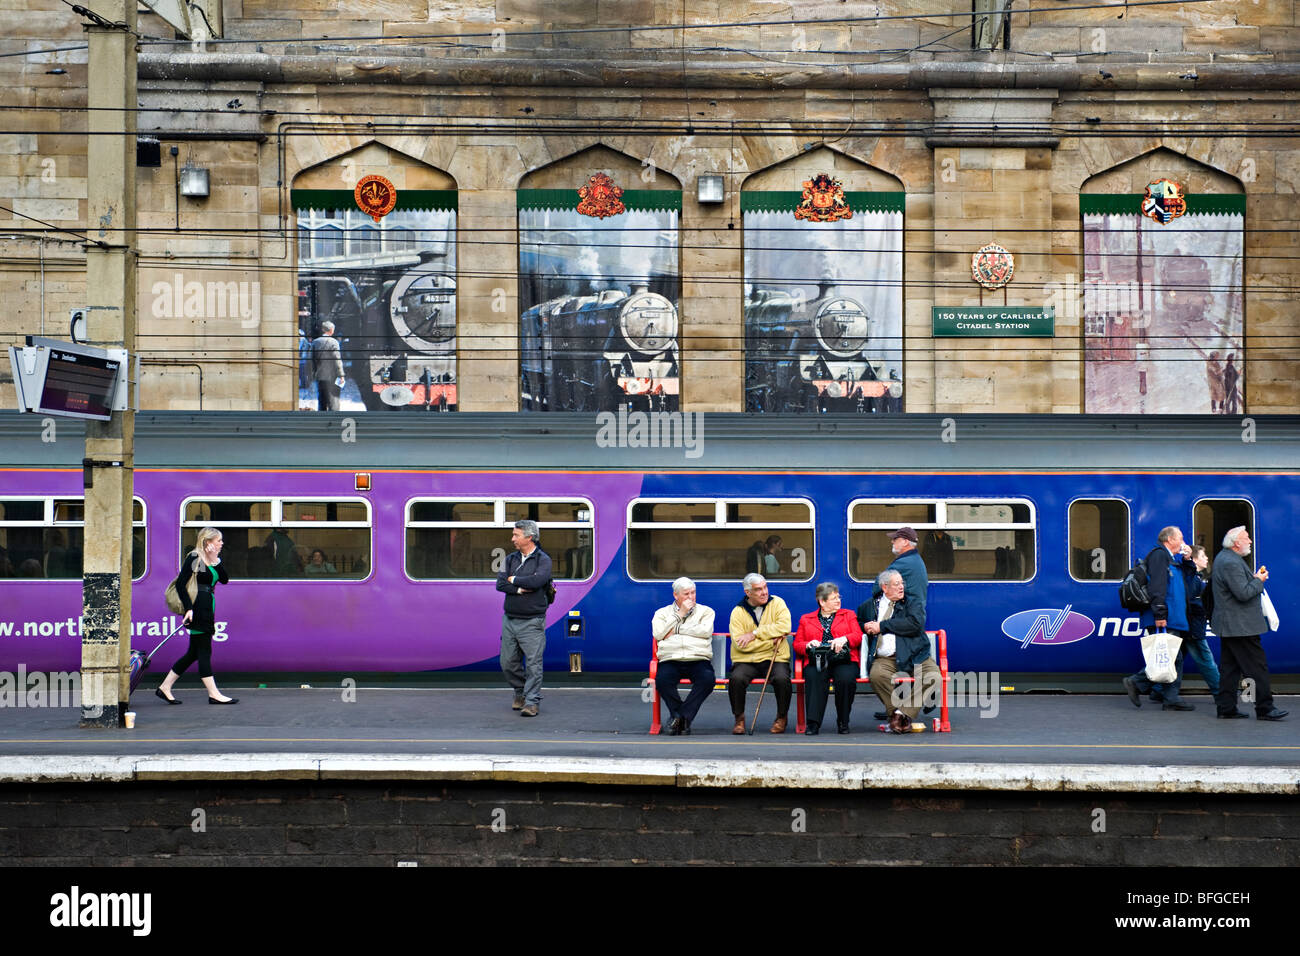 La gare de Carlisle, Royaume-Uni avec de la vapeur froide murales sur le mur. Banque D'Images